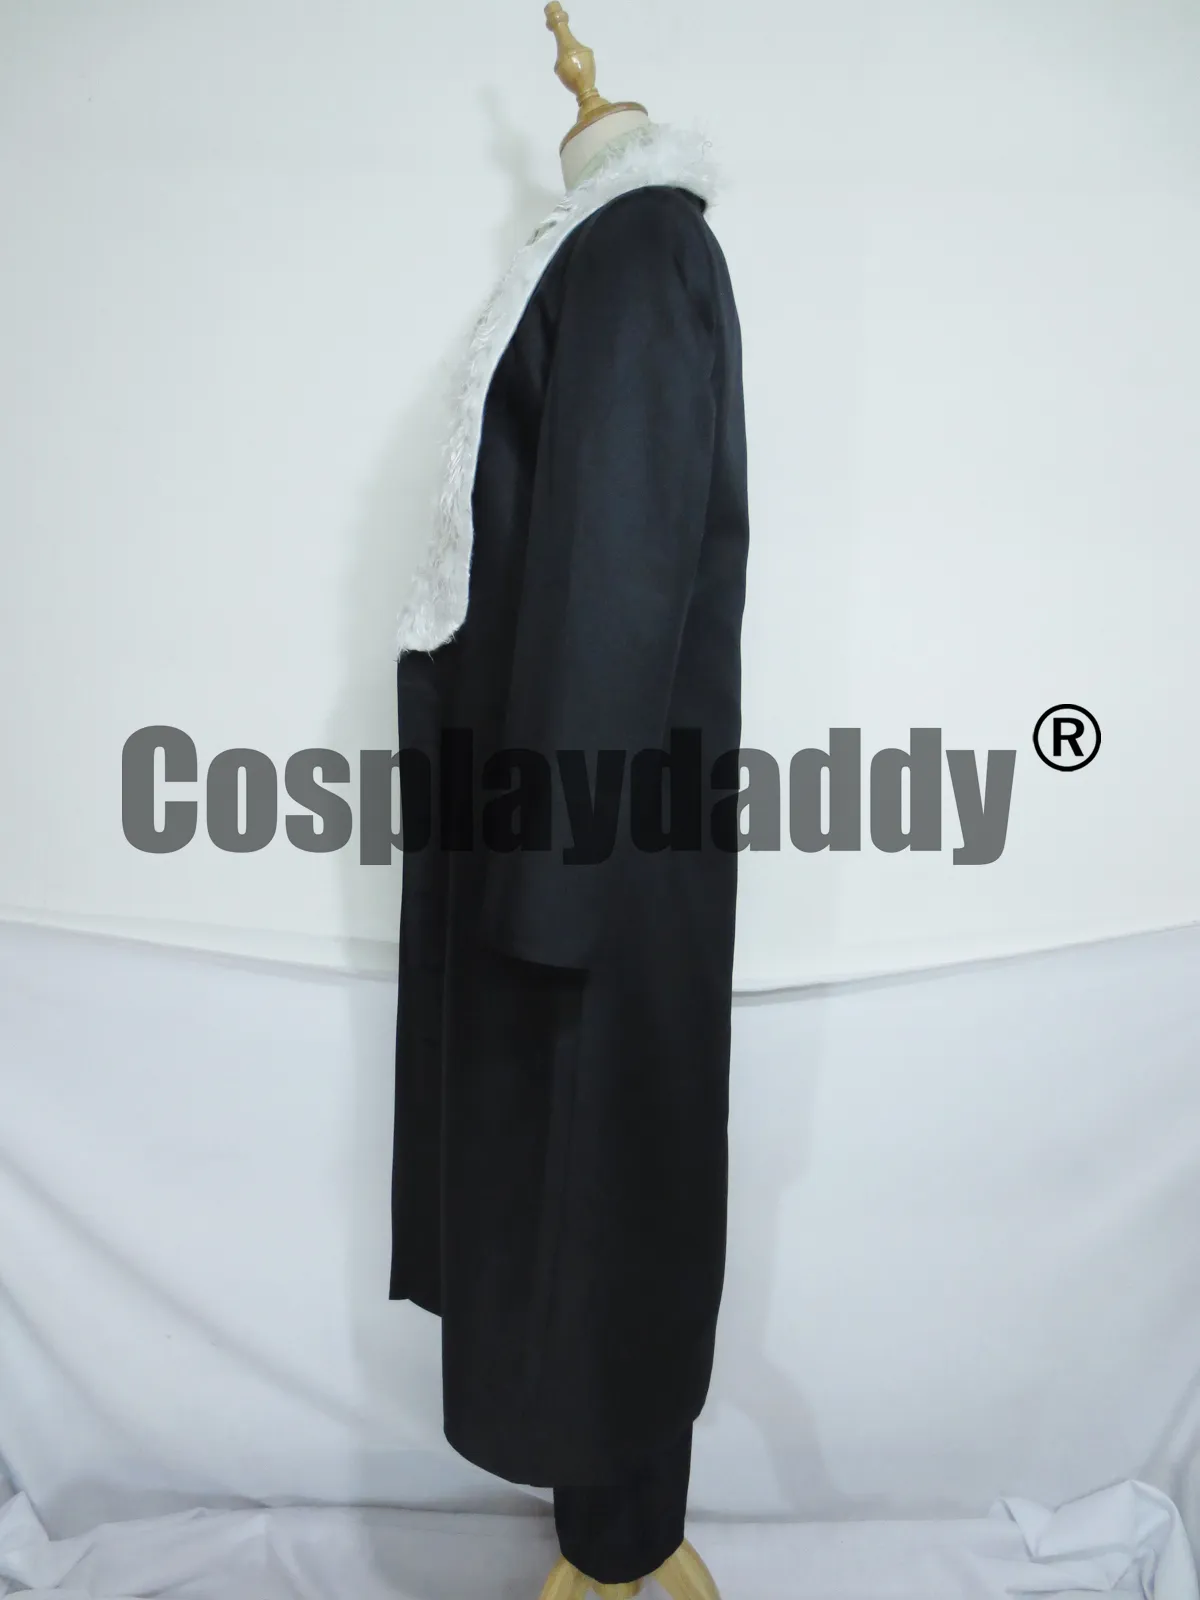 En bit cosplay kostym sir krokodil päls krage svart kappa